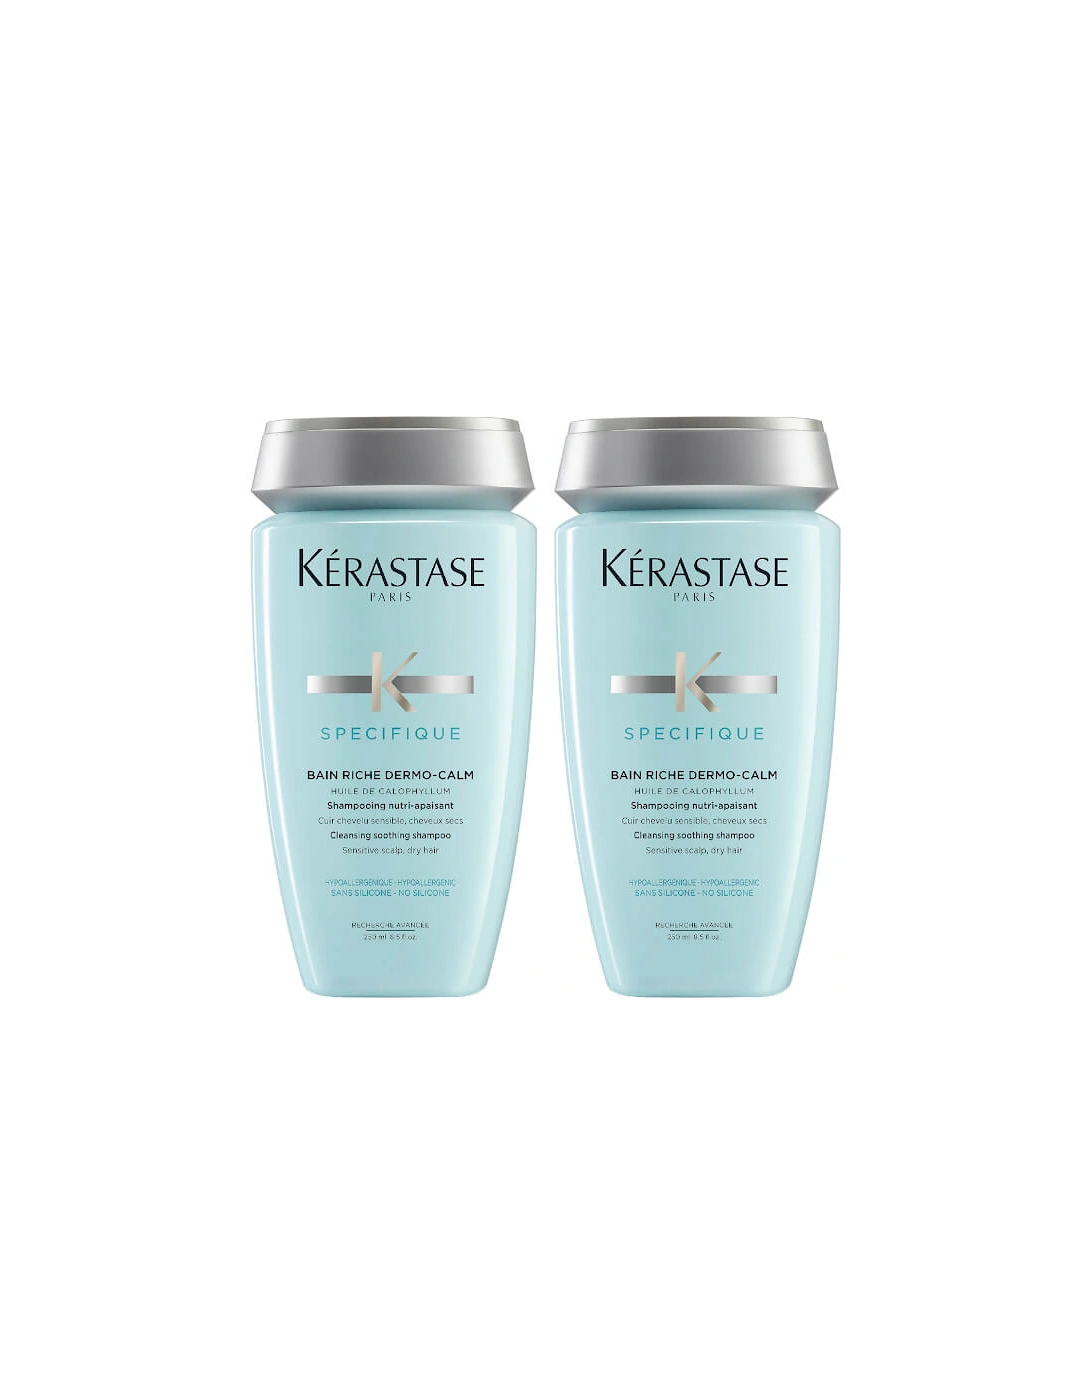 Kérastase Specifique Dermo-Calm Bain Riche Shampoo 250ml Duo - Kerastase, 2 of 1